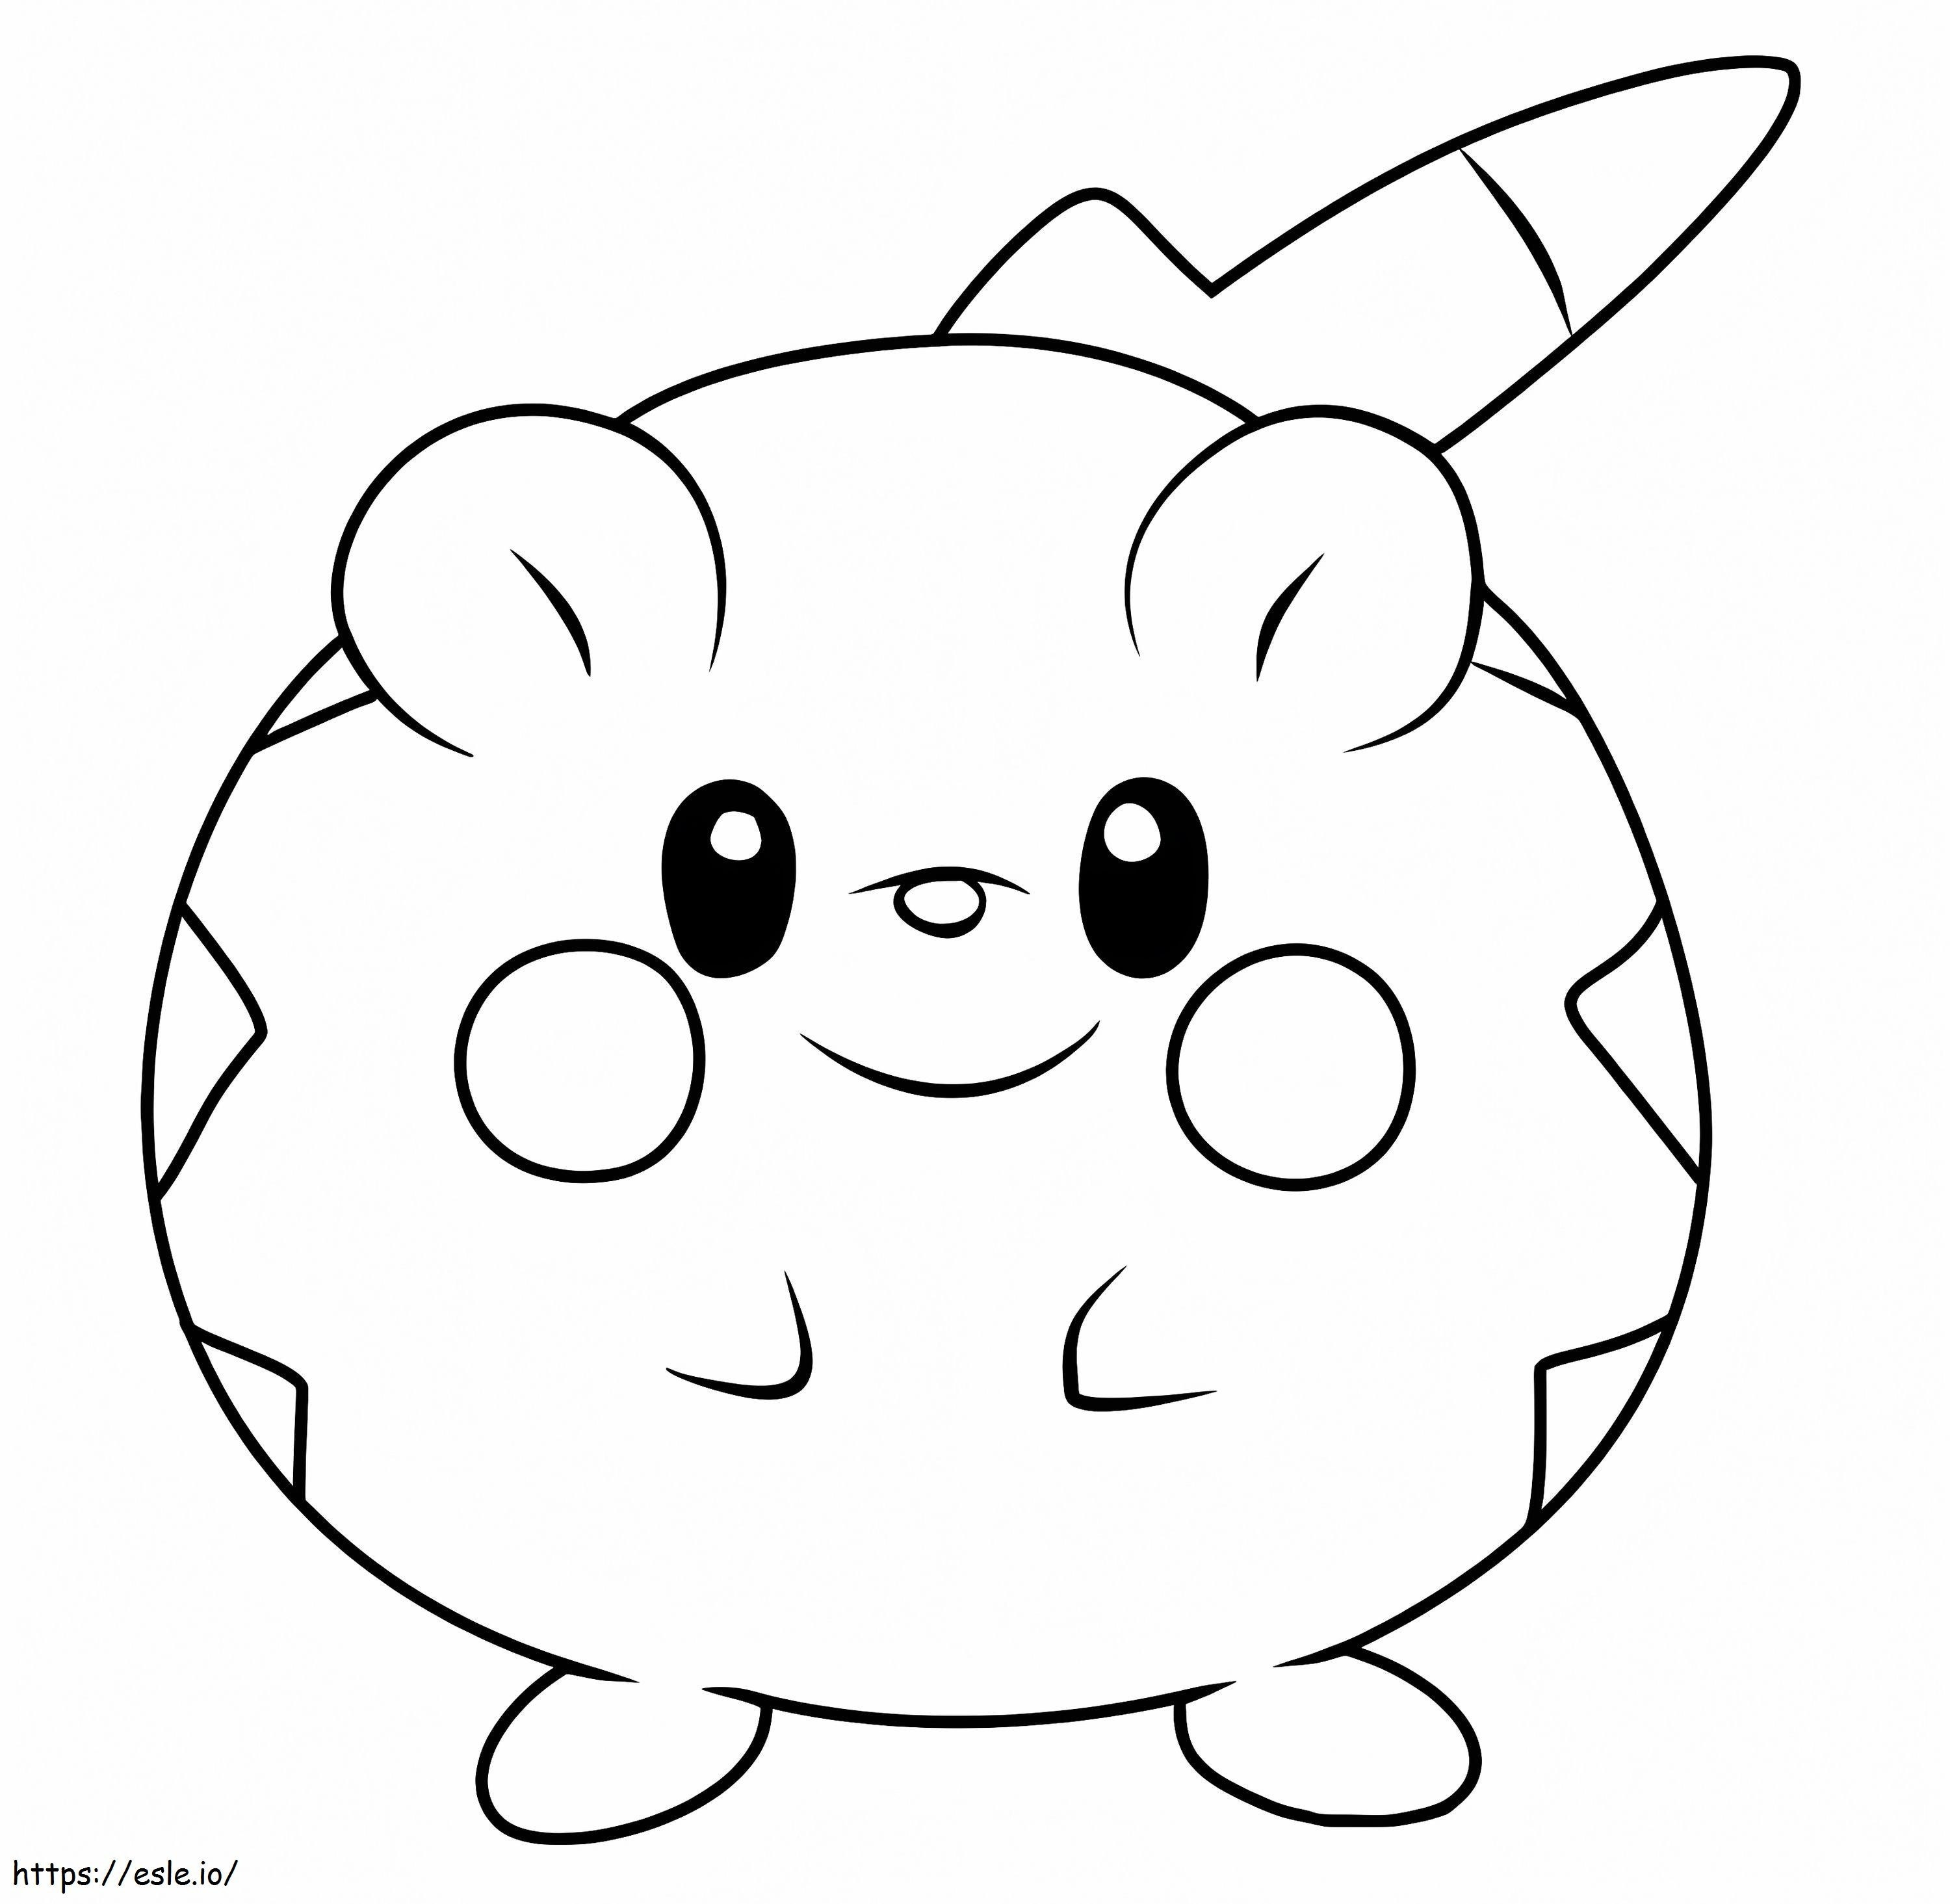 Togedemaru-Pokémon ausmalbilder